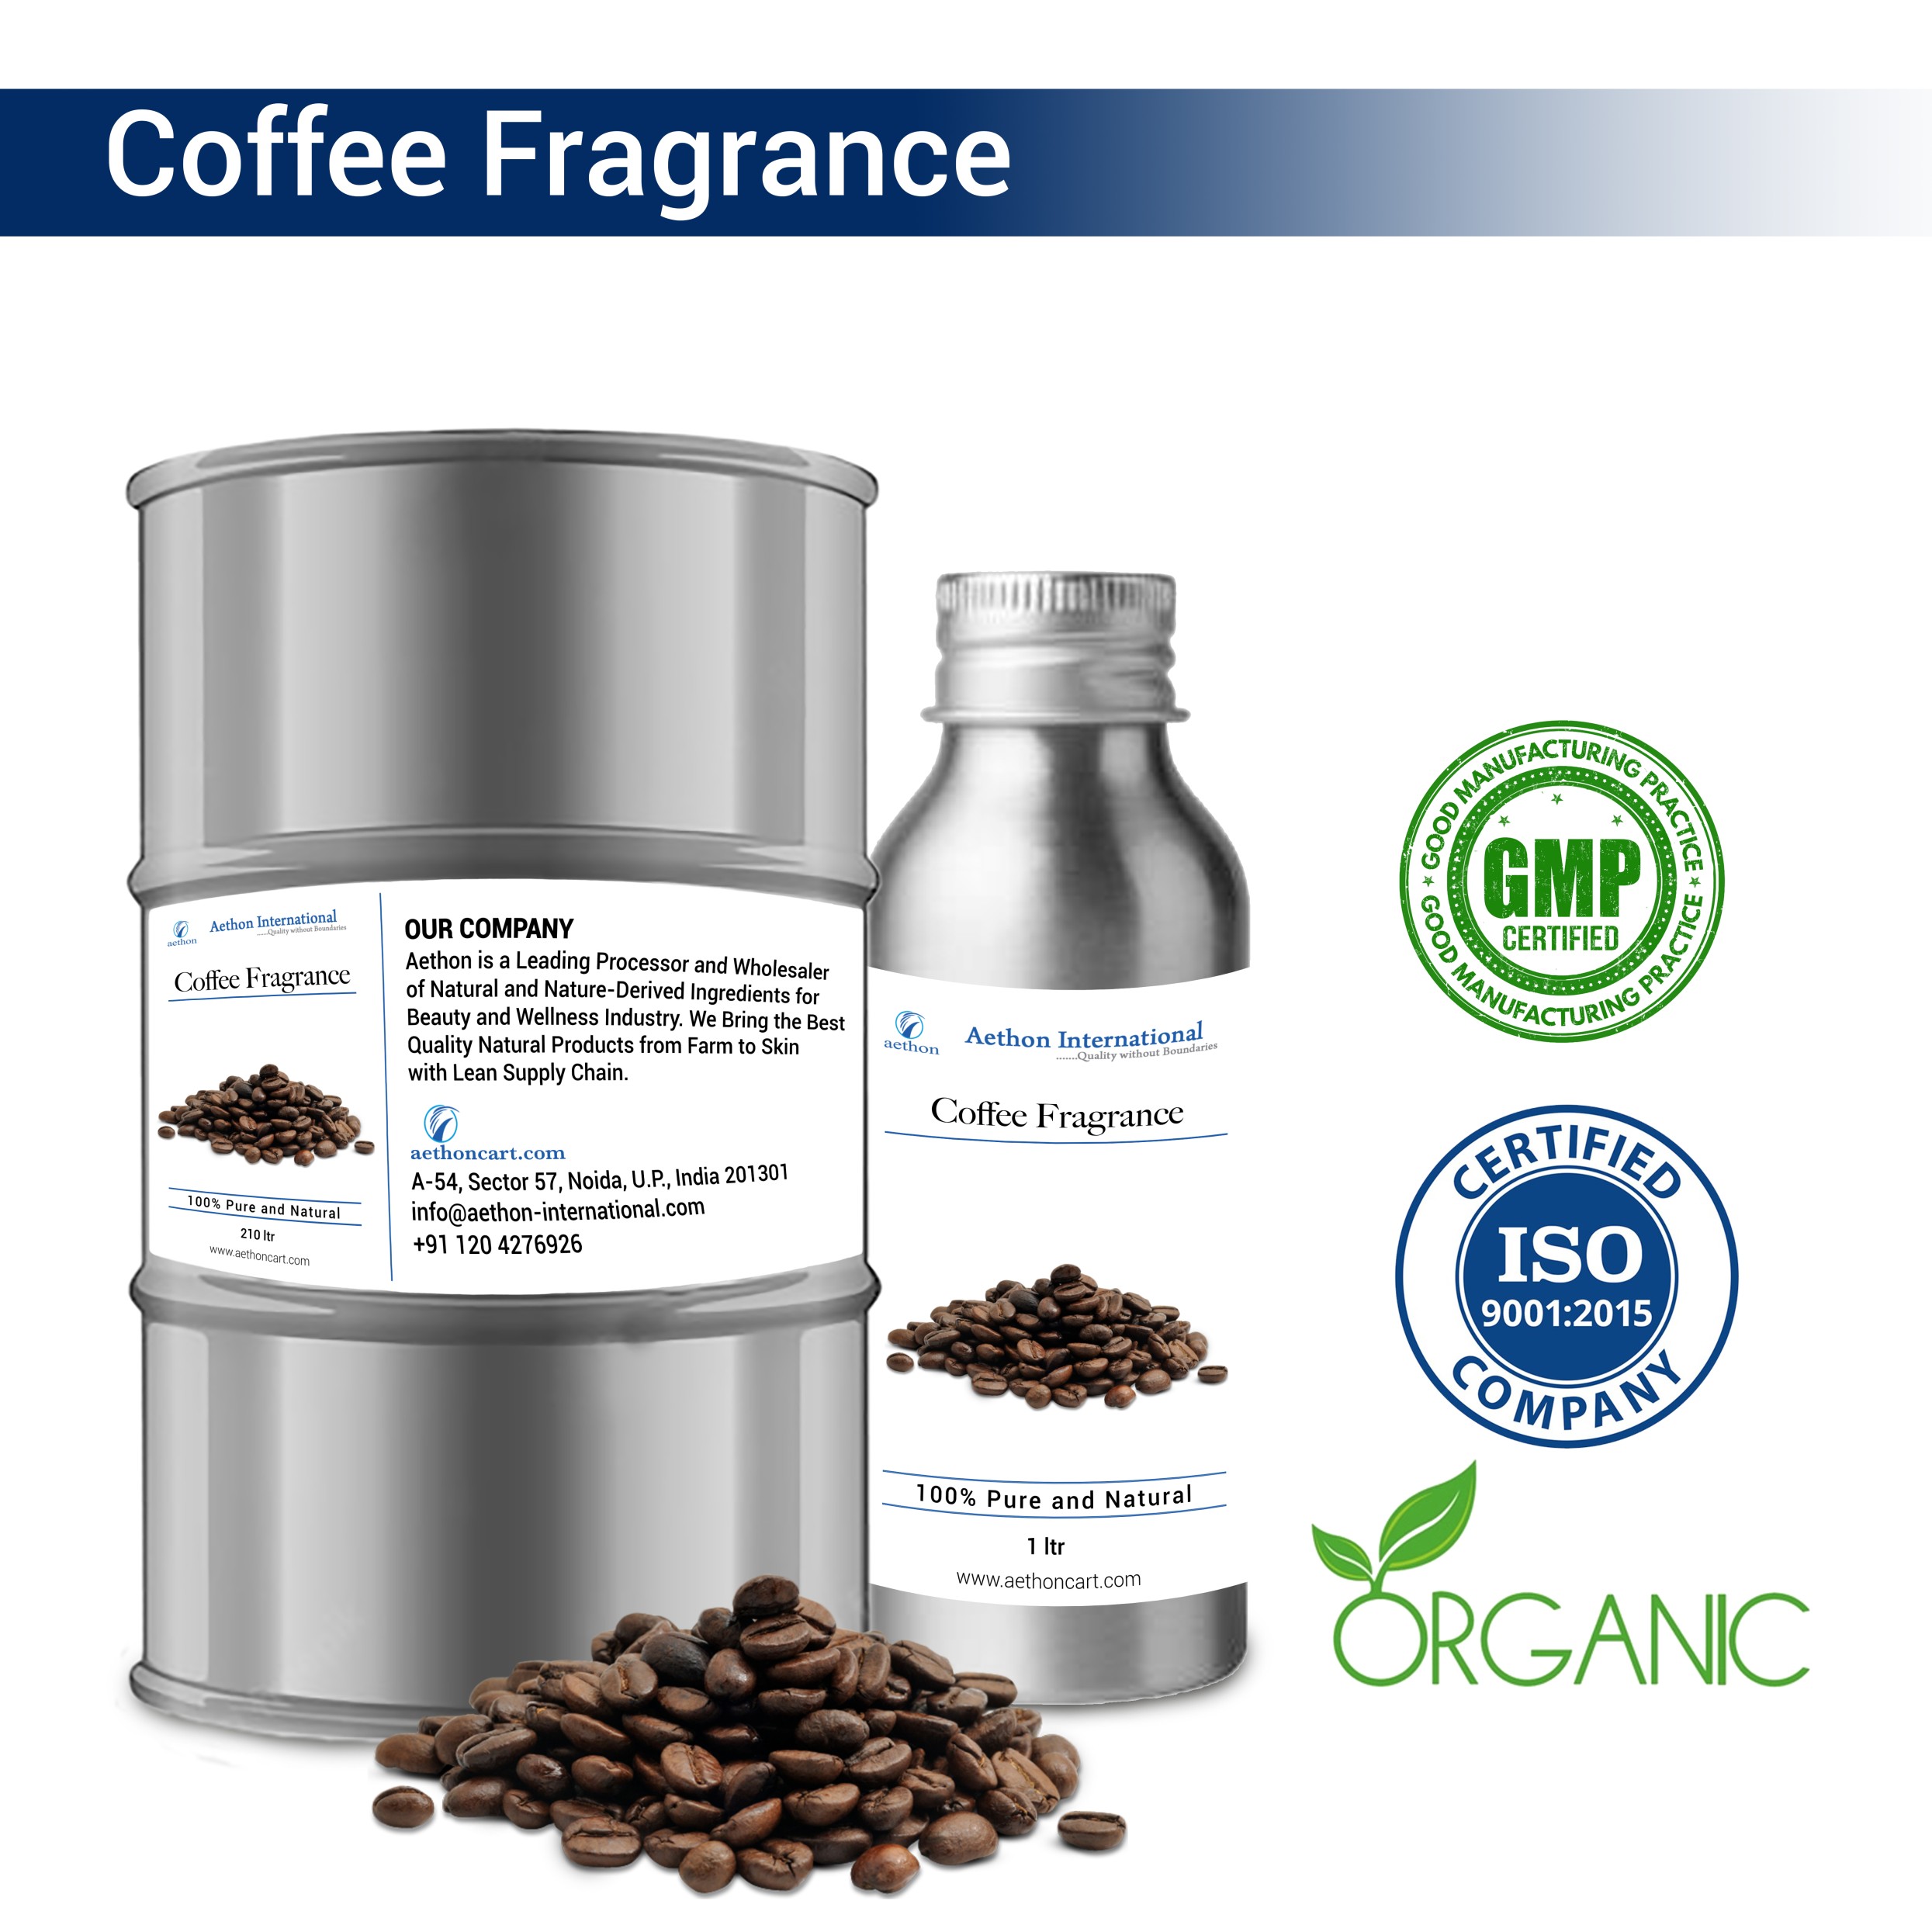 Coffee Fragrances (WS)